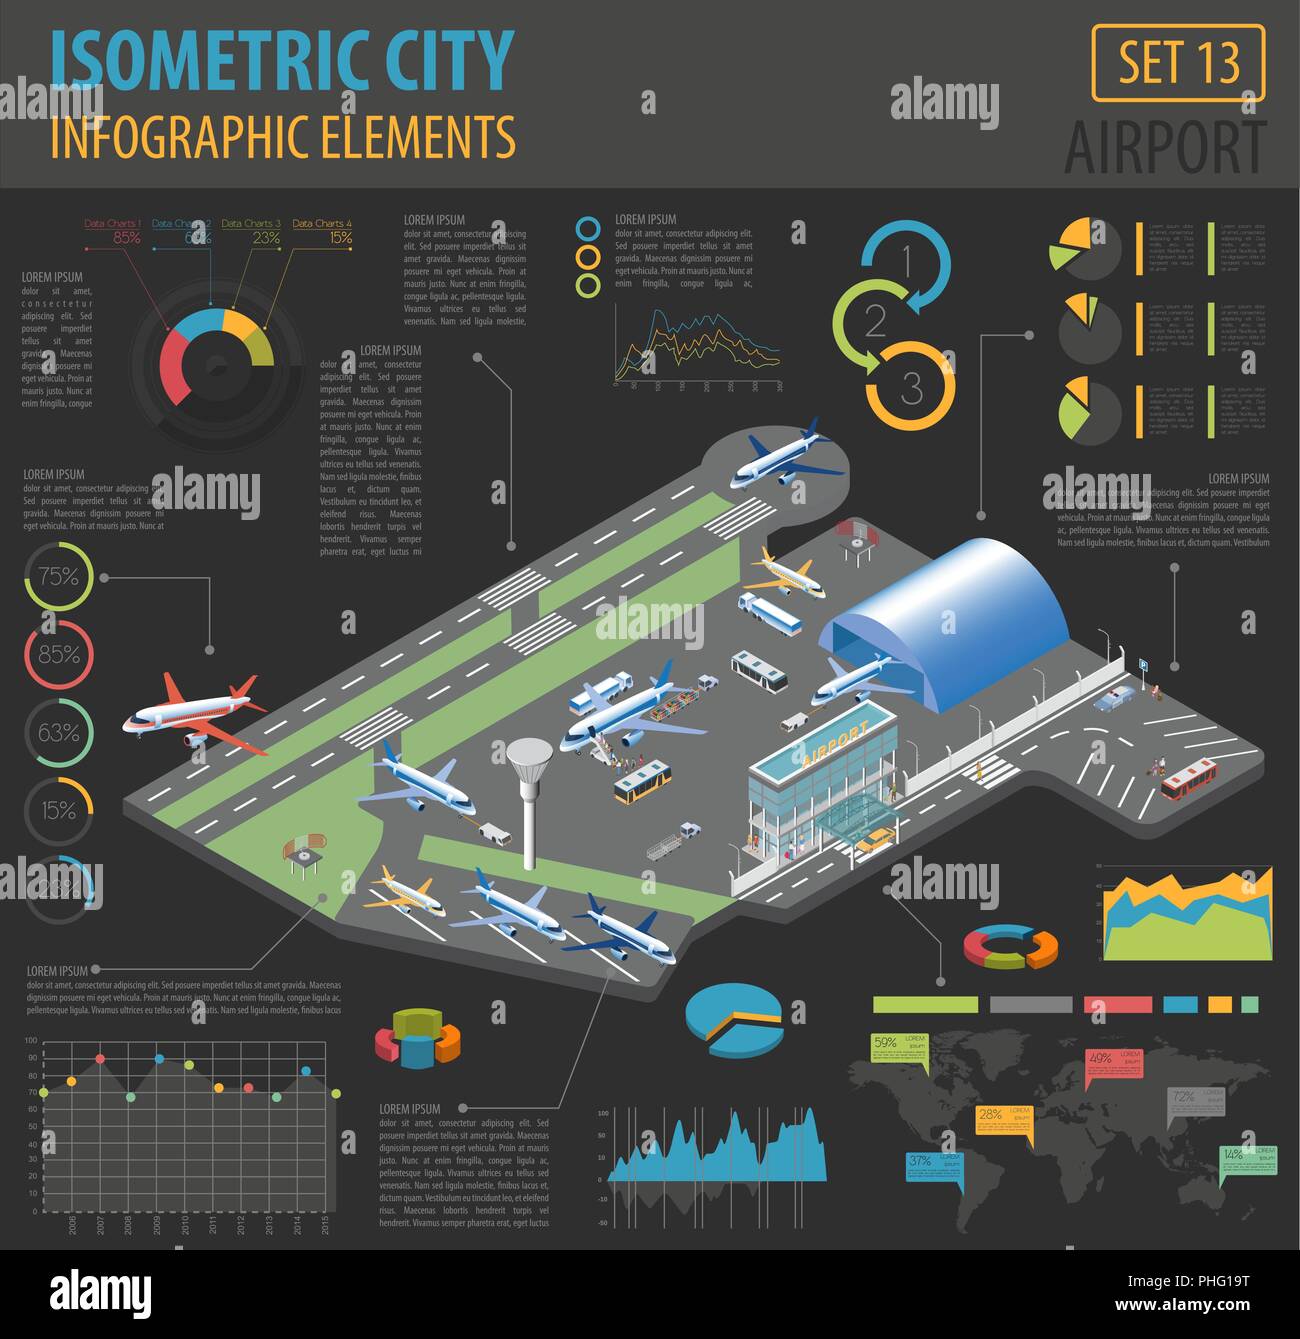 3d-isometrische Flughafen und City Map Konstruktor Elemente isoliert auf Weiss. Ihre eigene Infografik Sammlung aufzubauen. Vector Illustration Stock Vektor